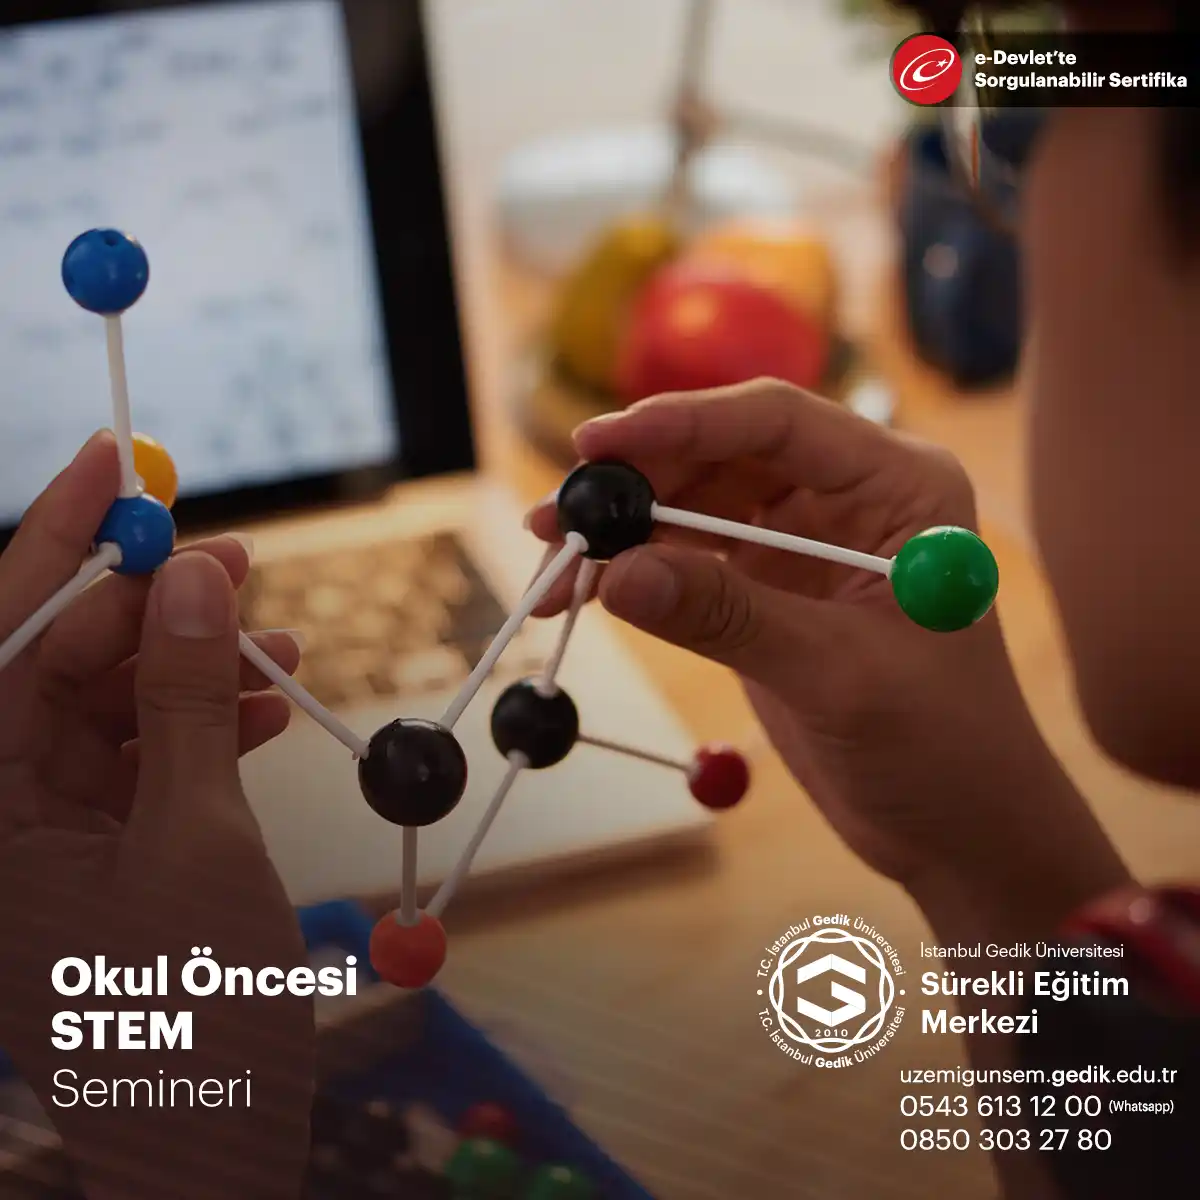 Okul öncesi dönemdeki çocuklara bilim, teknoloji, mühendislik ve matematik konularını keşfetme fırsatı sunarak STEM becerilerinin gelişimini amaçlamaktadır.